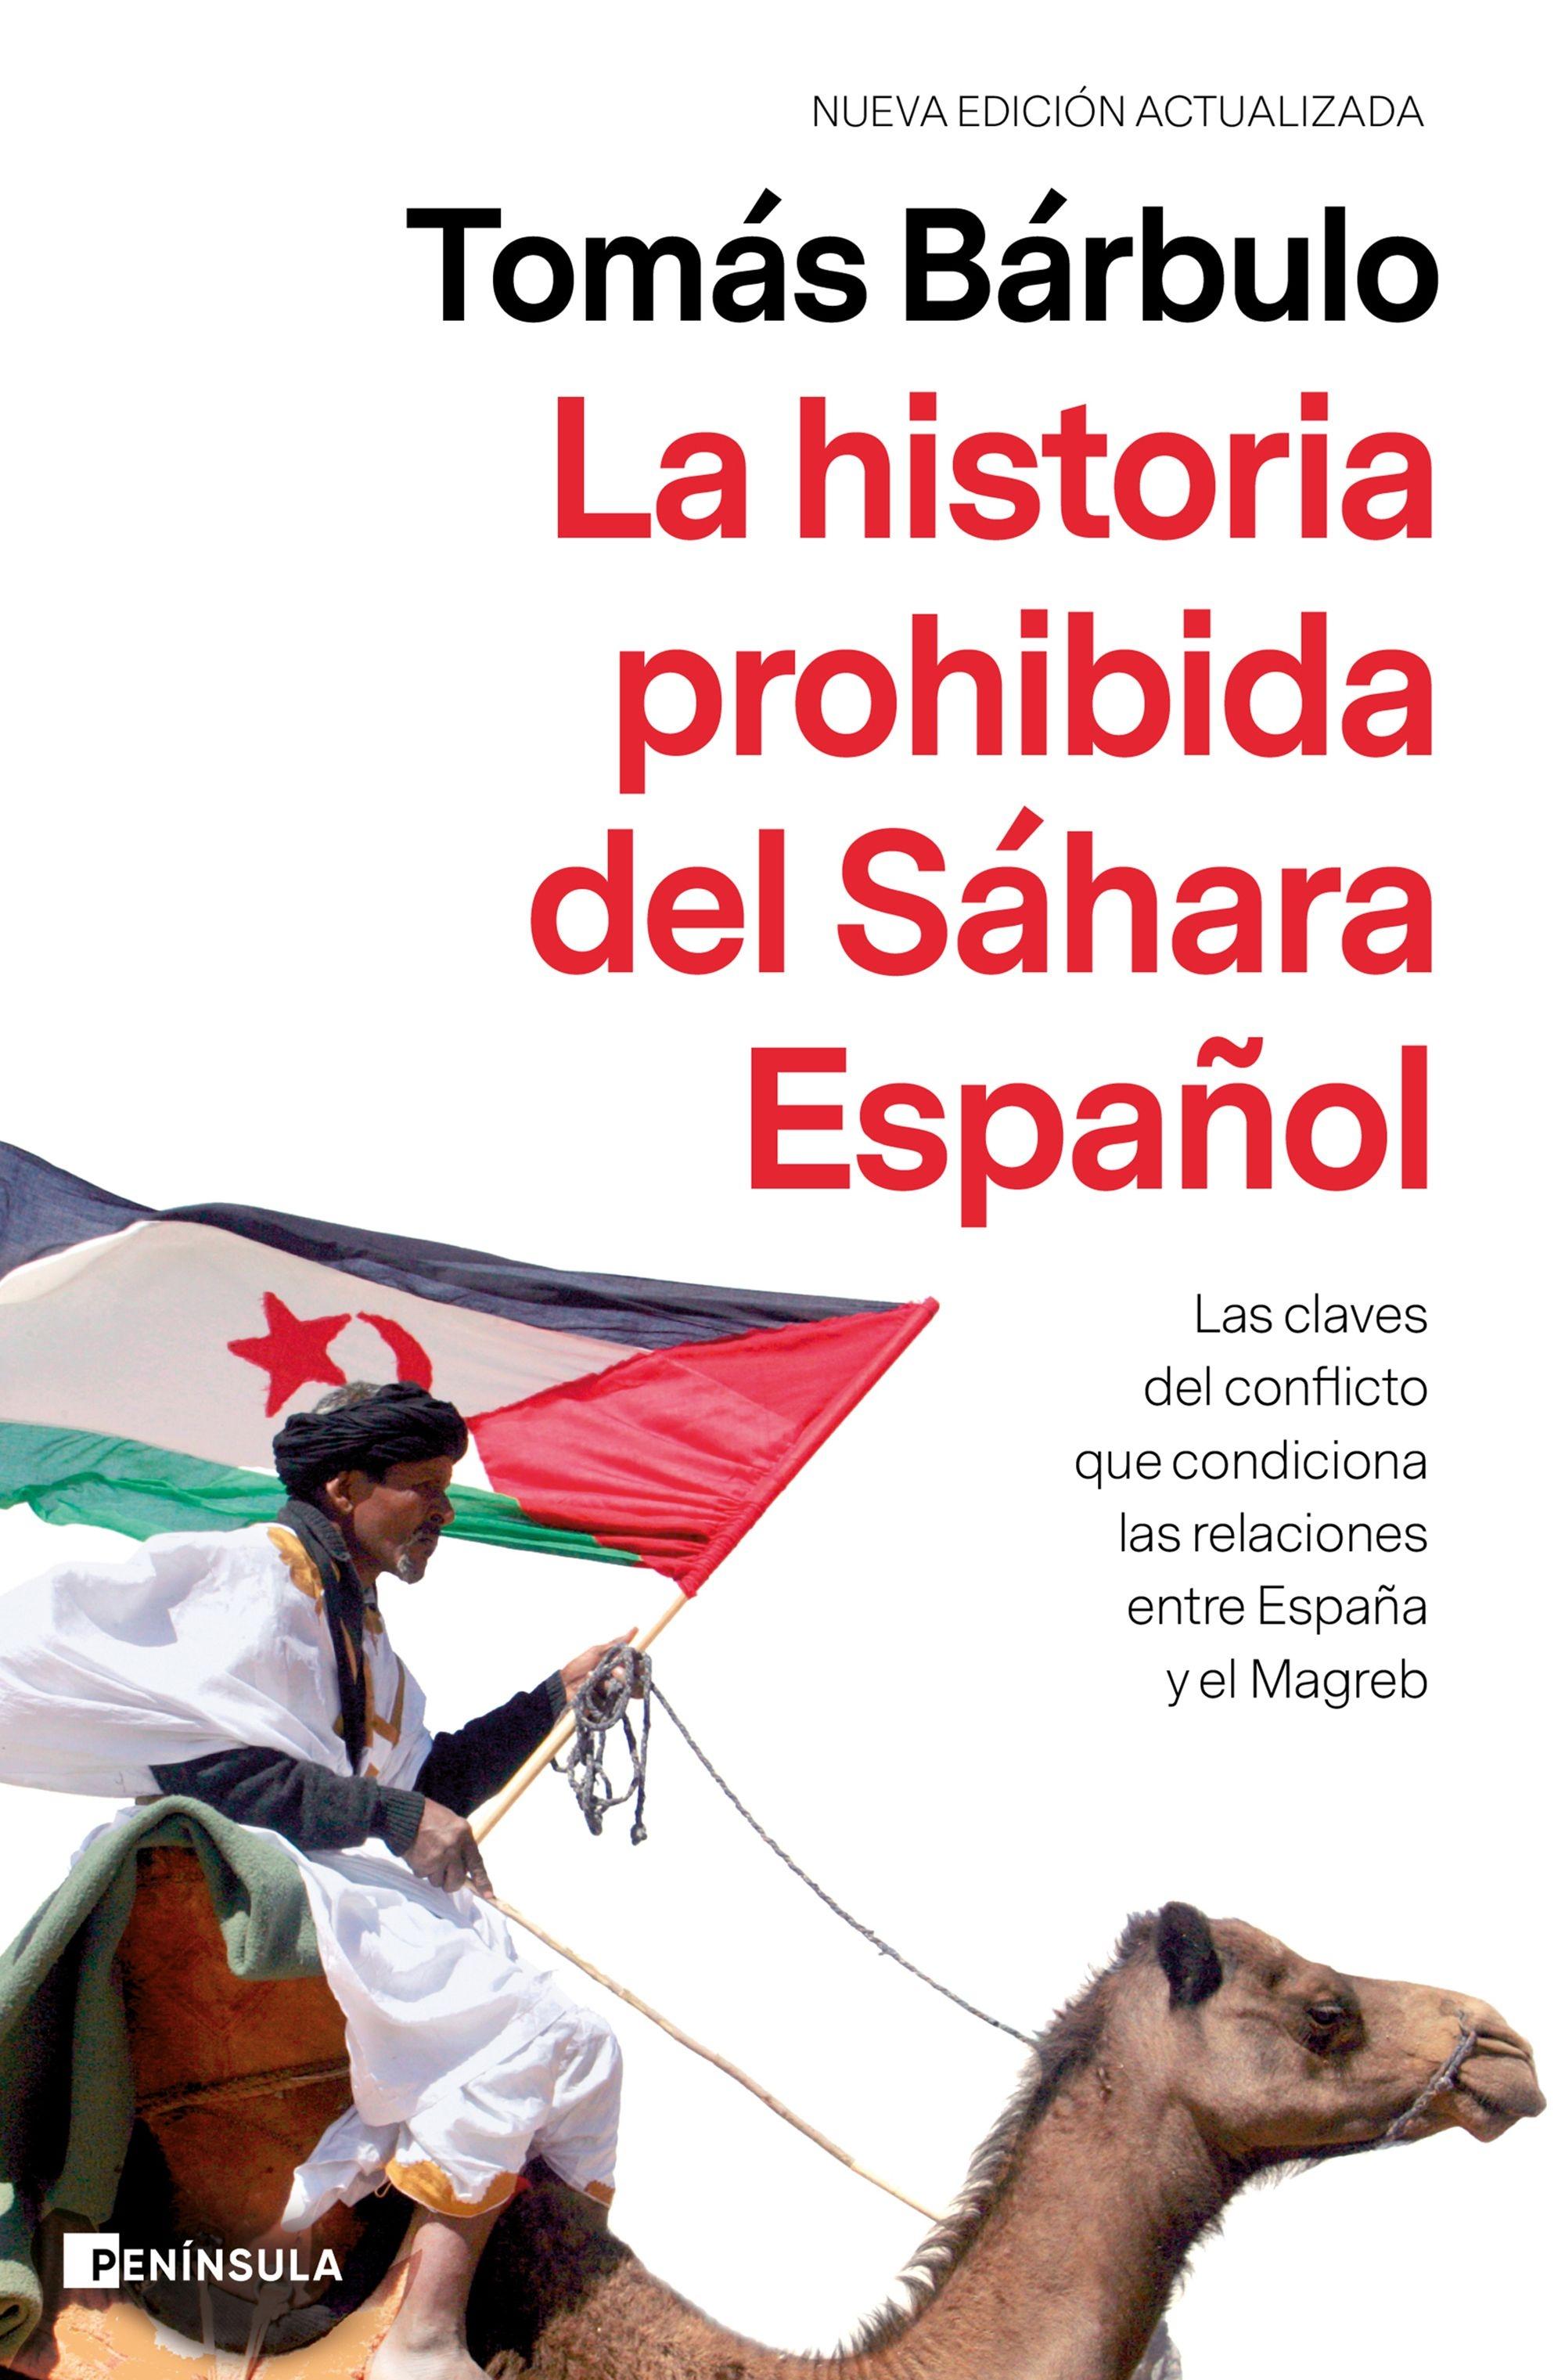 La historia prohibida del Sáhara Español "Las claves del conflicto que condiciona las relaciones entre España y el Magreb". 